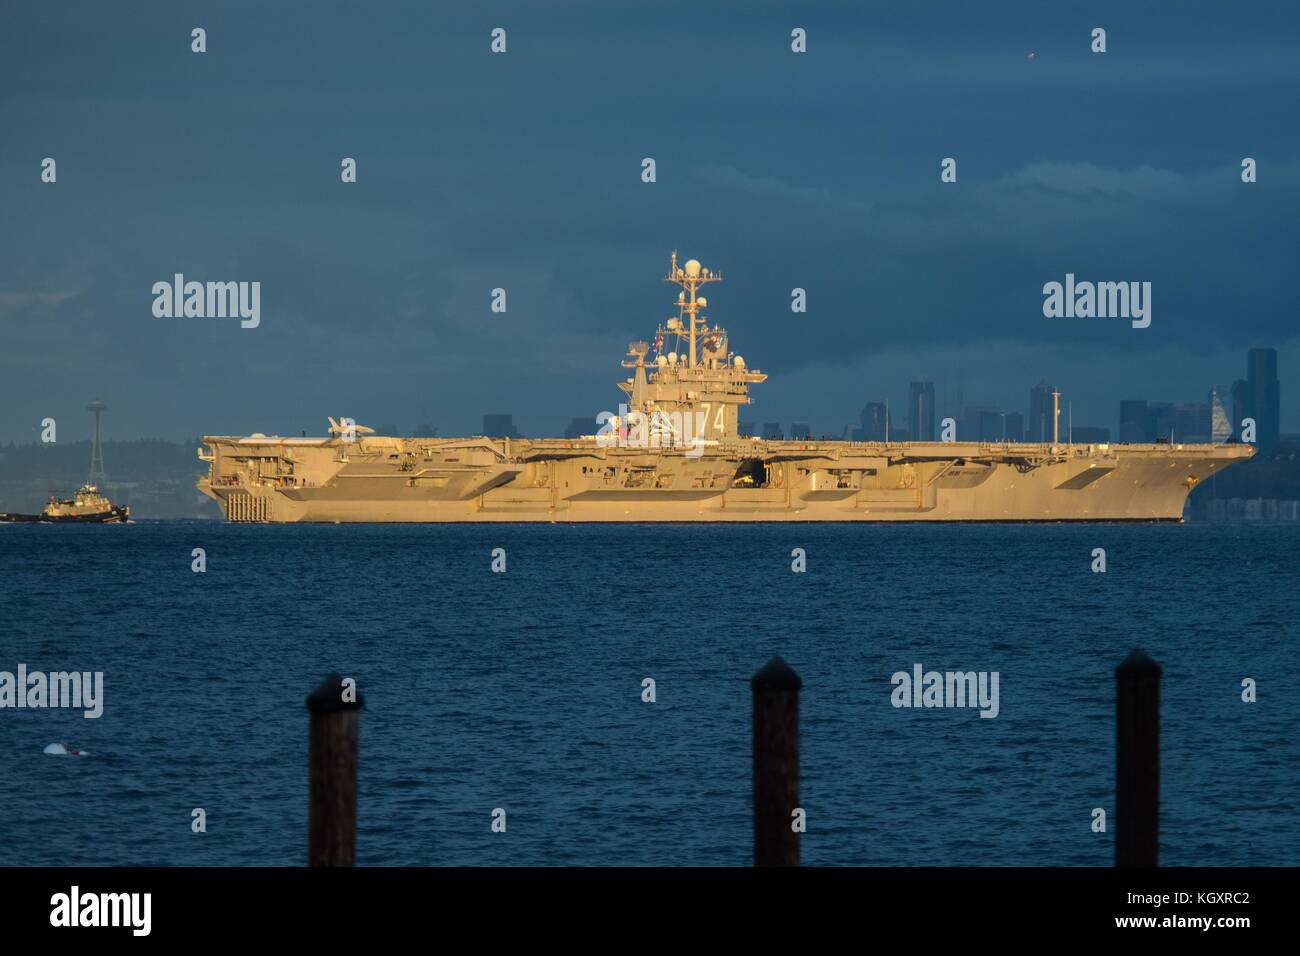 La marine américaine de classe nimitz porte-avions USS John C. Stennis transite l'Elliott Bay avec le Seattle City skyline en arrière-plan le 3 novembre 2017 à Manchester, dans l'État de Washington. (Photo de vaughan dill via planetpix) Banque D'Images